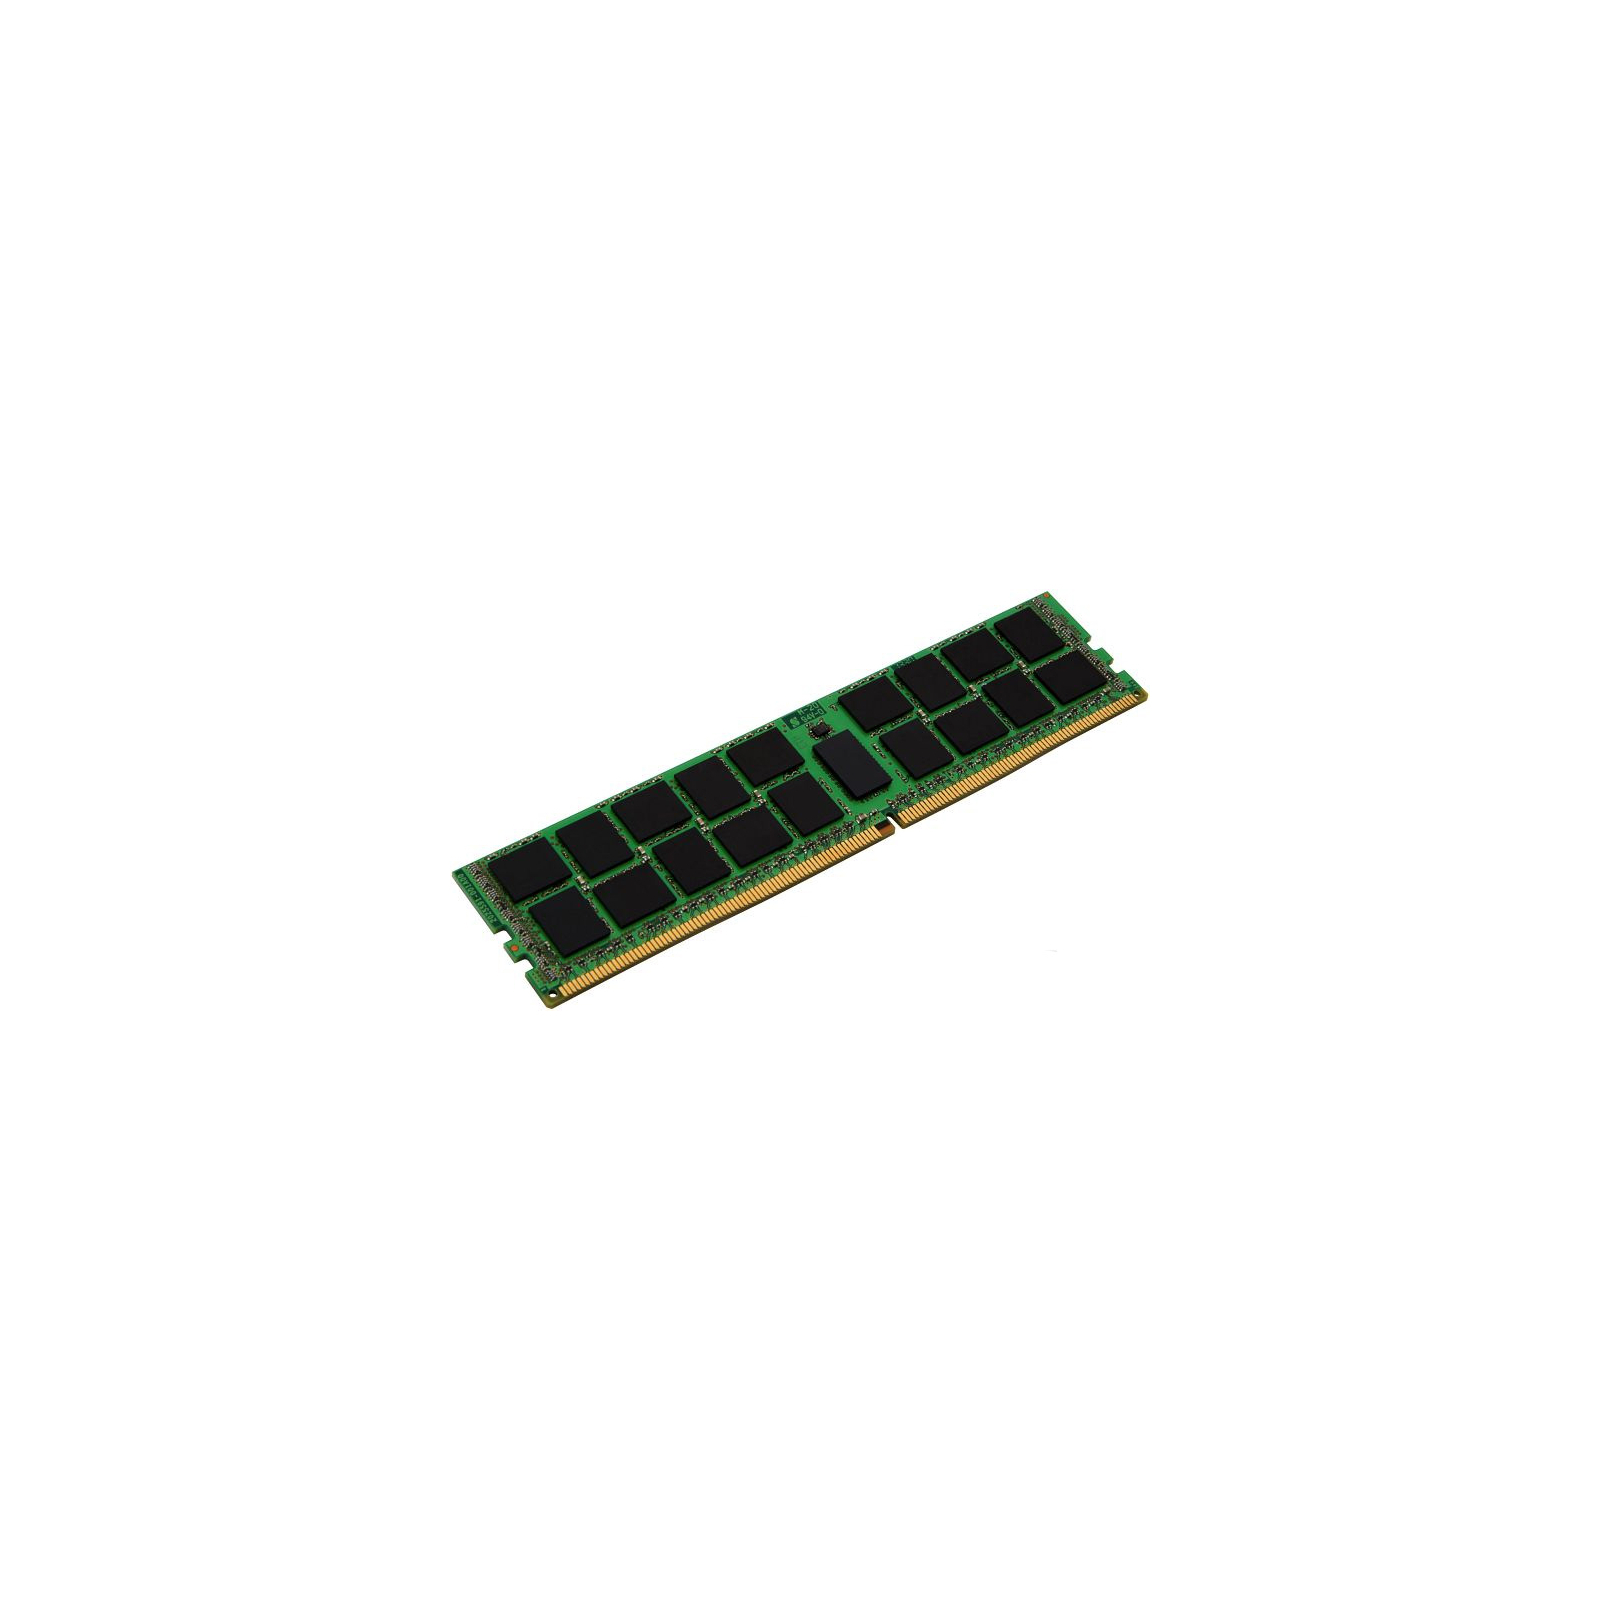 Модуль памяти для сервера DDR4 16GB ECC RDIMM 2133MHz 2Rx4 1.2V CL15 Kingston (KVR21R15D4/16)